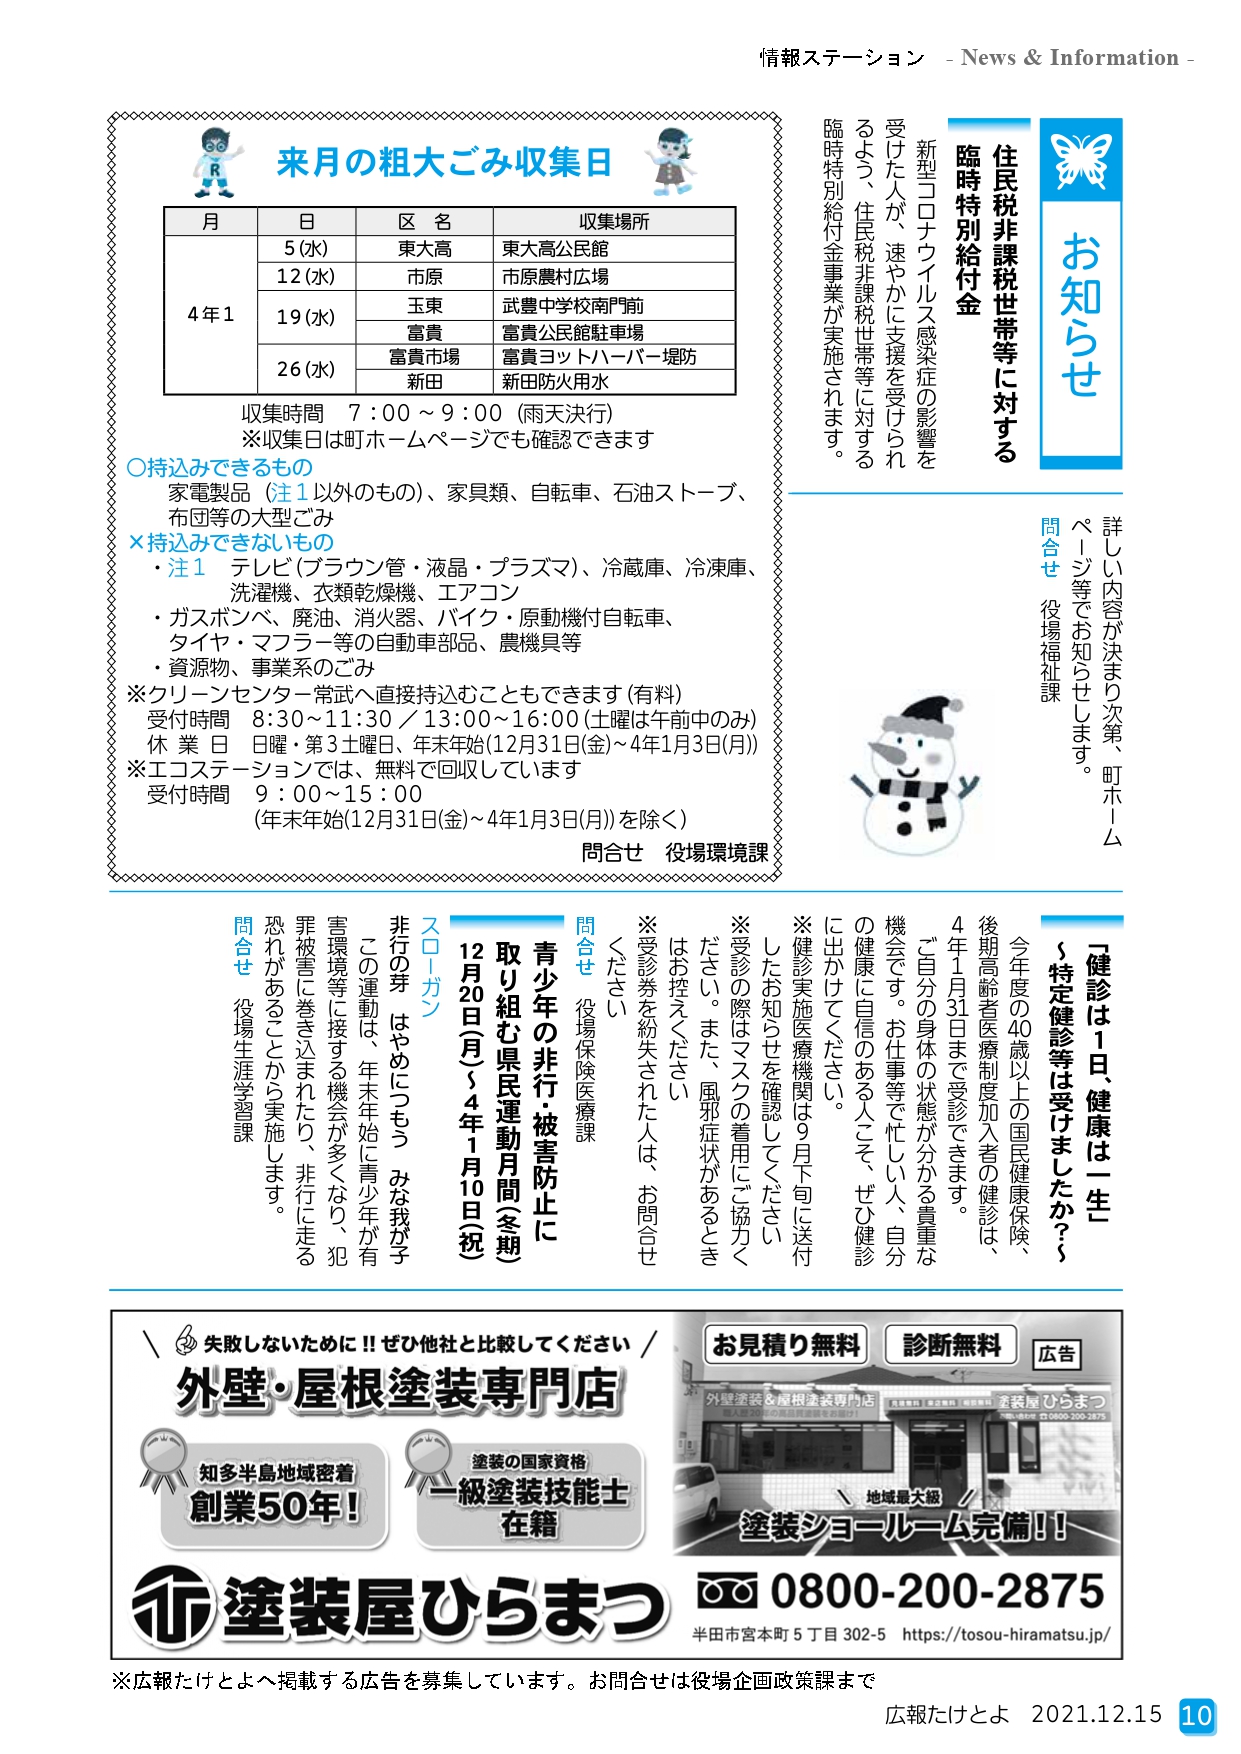 武豊町の発行する広報誌に塗装屋ひらまつが掲載されました。